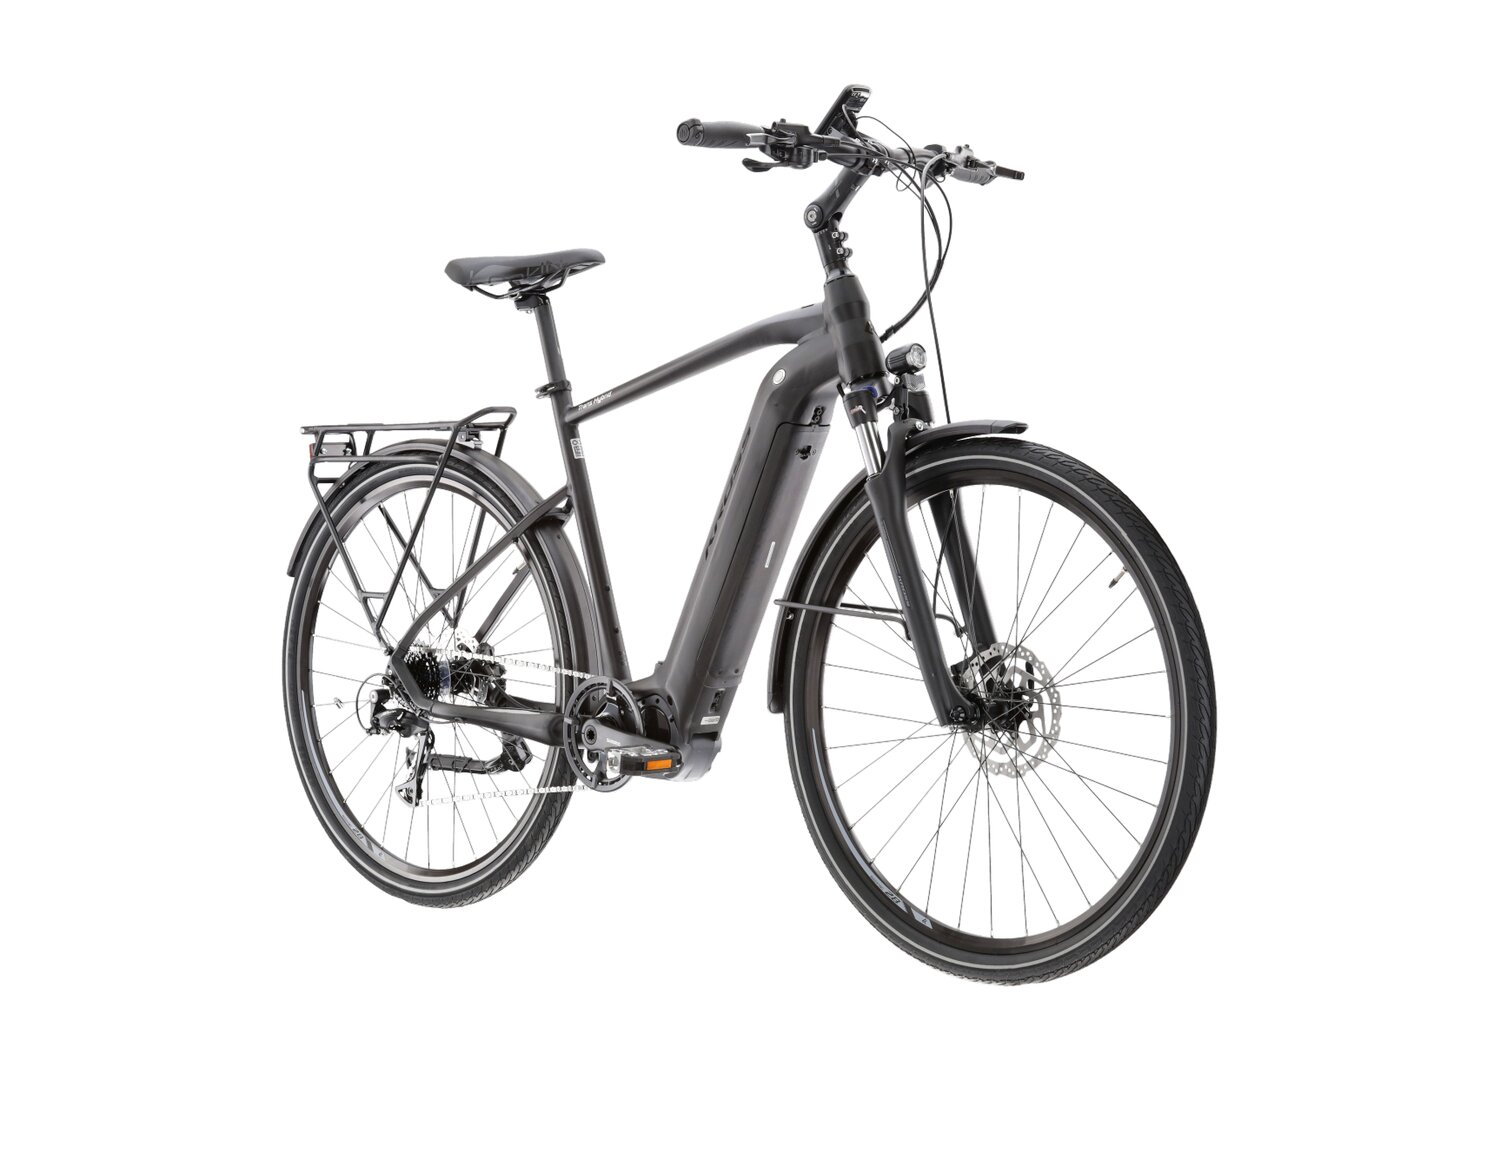  Elektryczny rower trekkingowy KROSS Trans Hybrid 4.0 500 Wh na aluminiowej ramie w kolorze czarnym wyposażony w osprzęt Shimano i napęd elektryczny Shimano